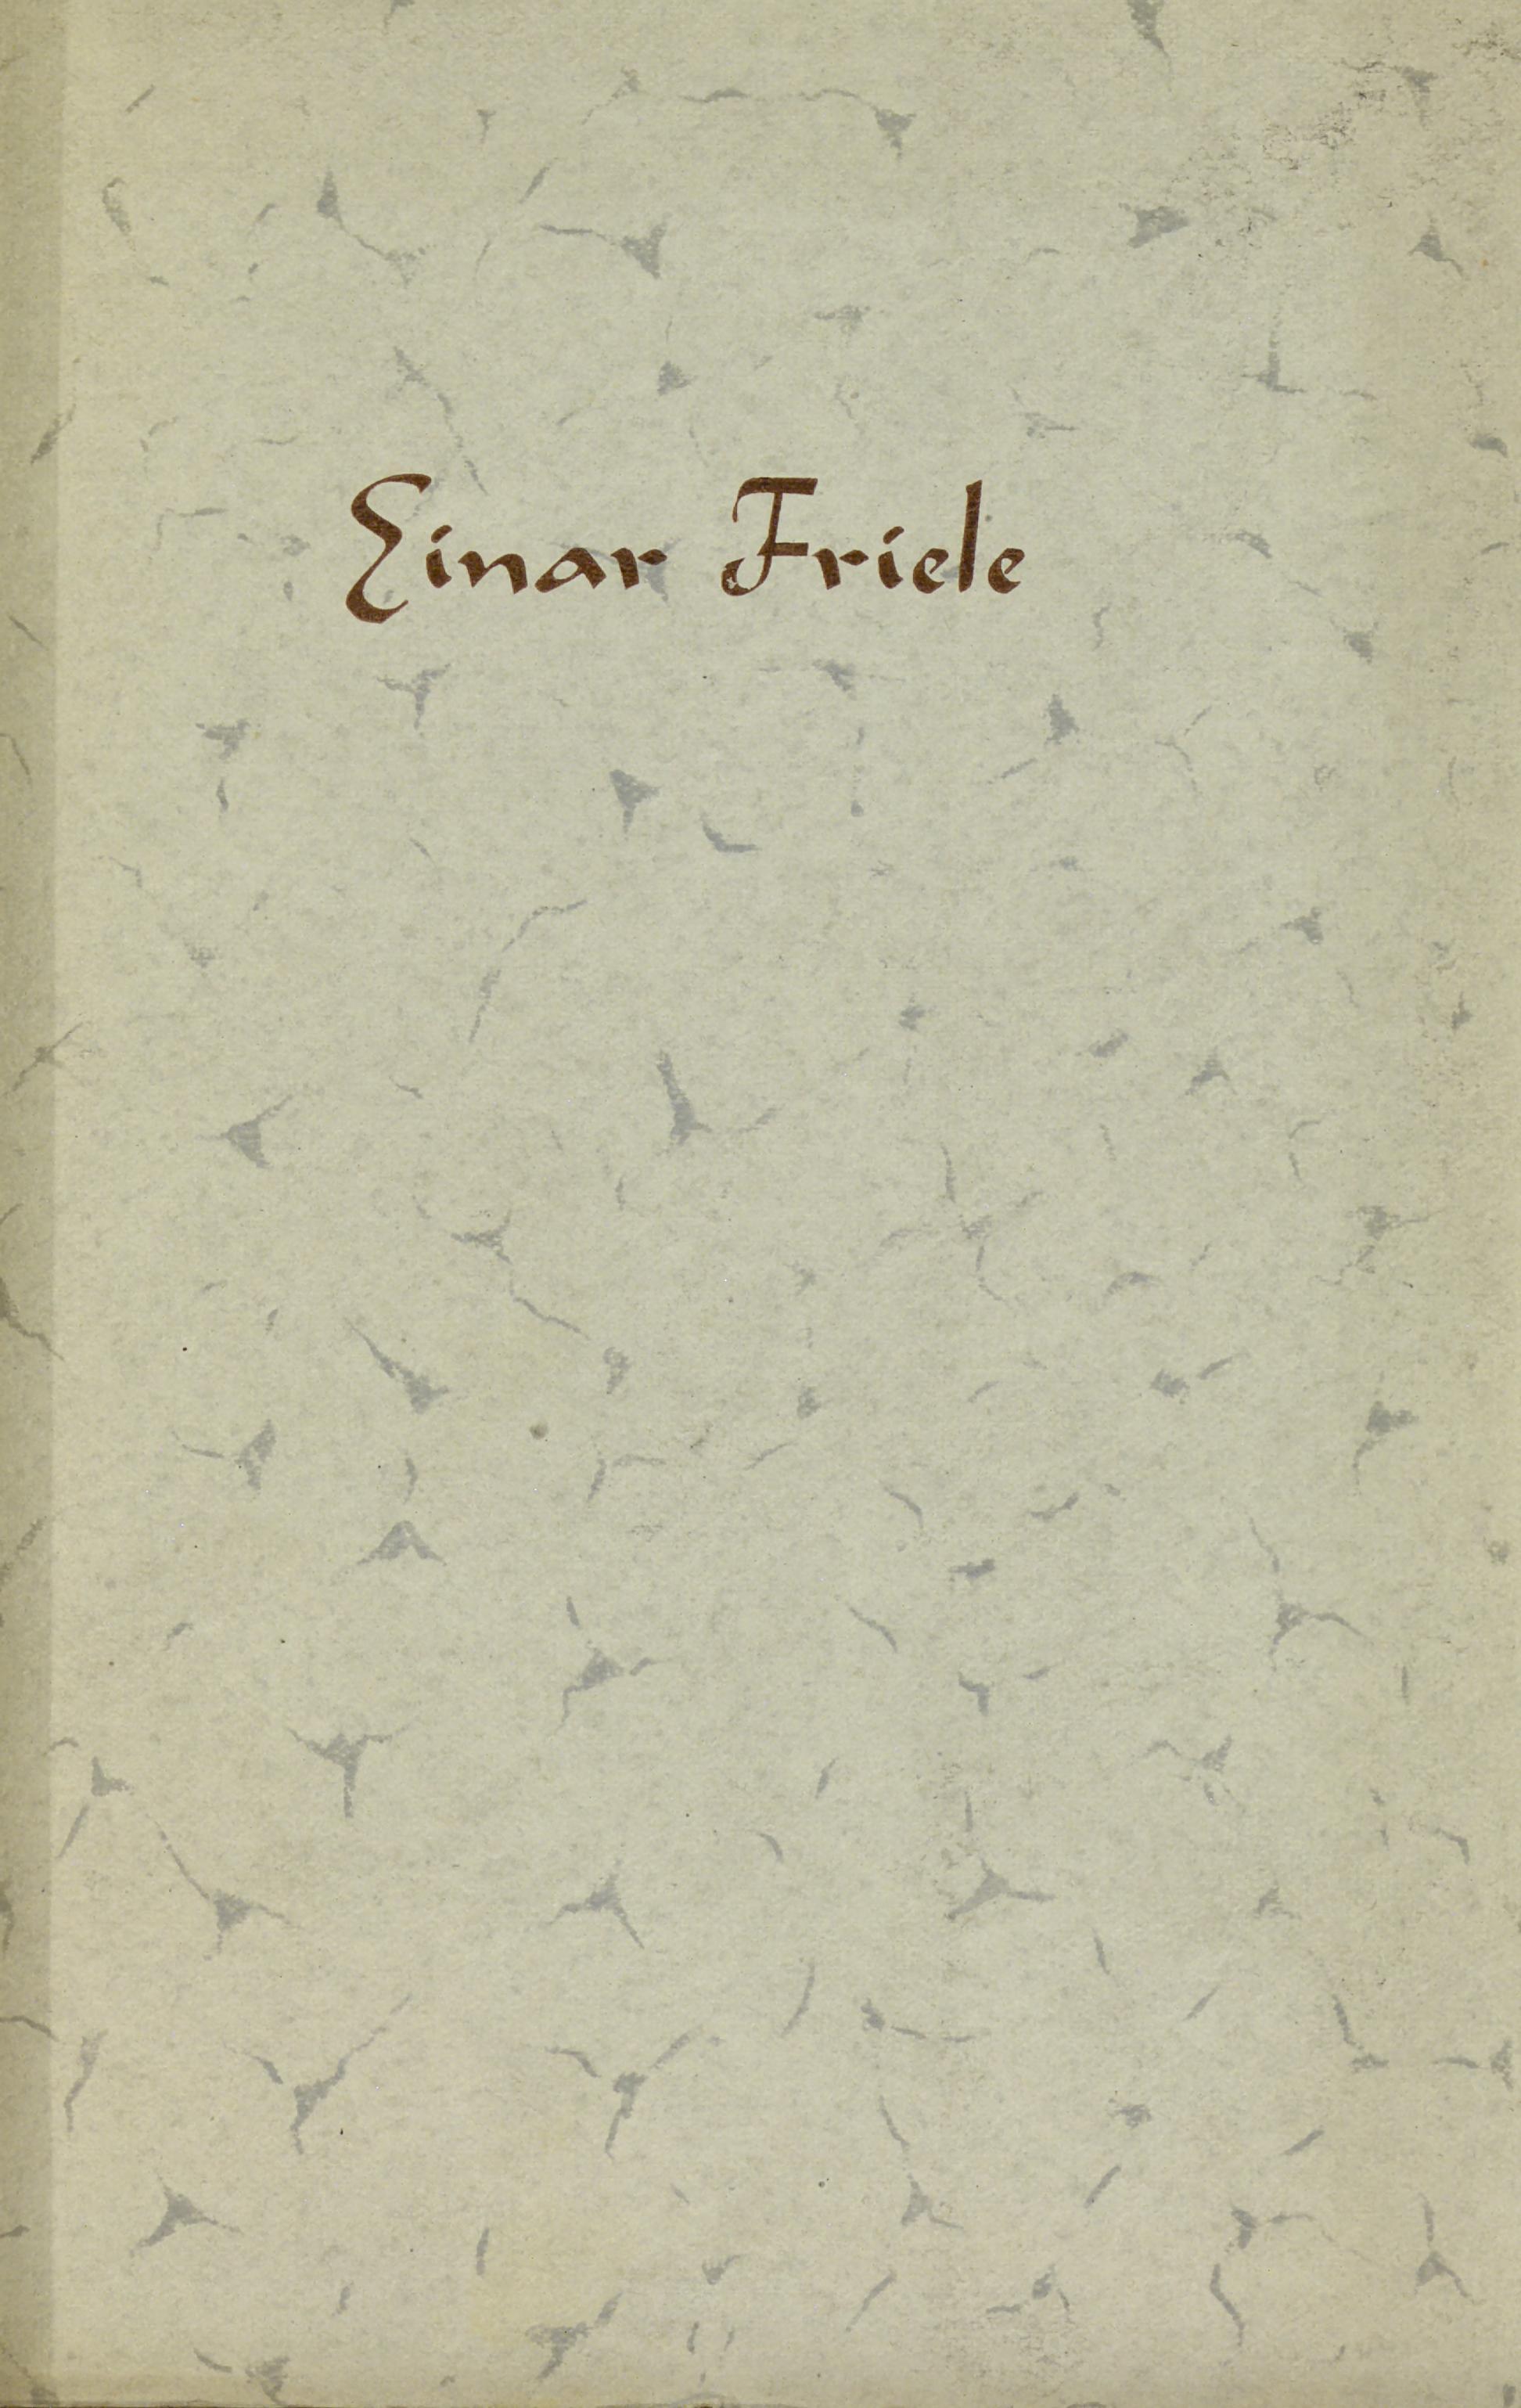 Boken om Einar Friele